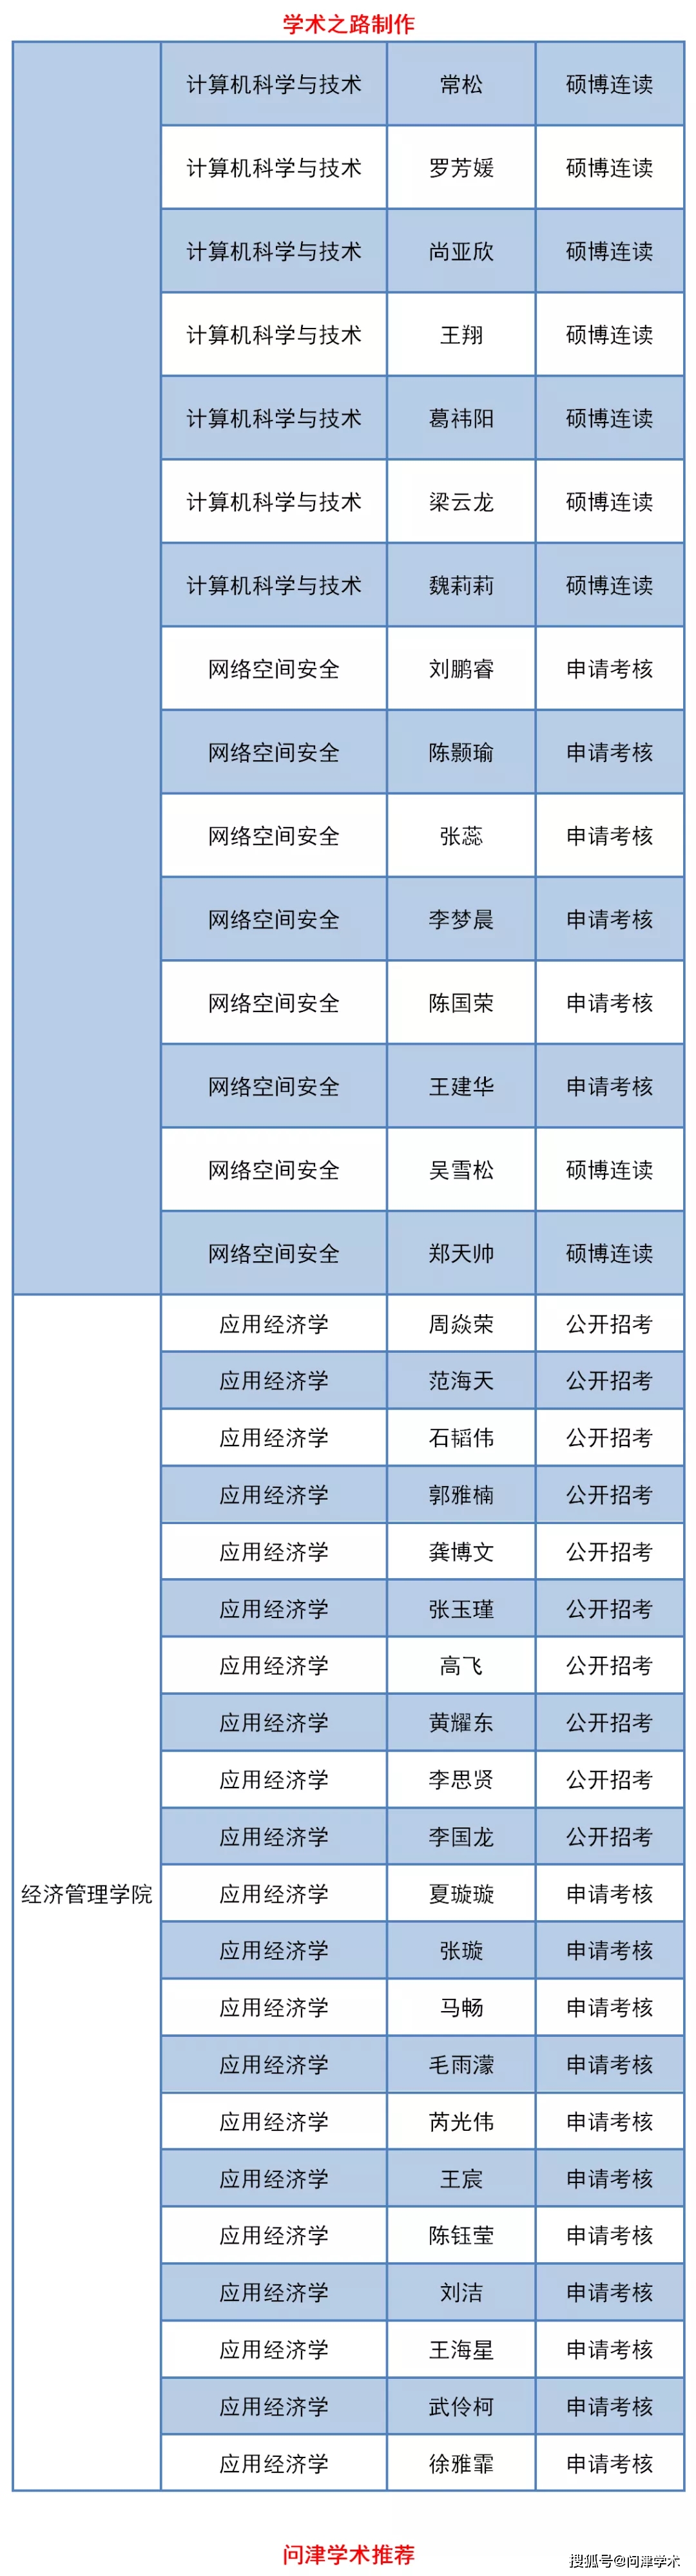 北京交通大学2020年博士研究生拟录取名单公示